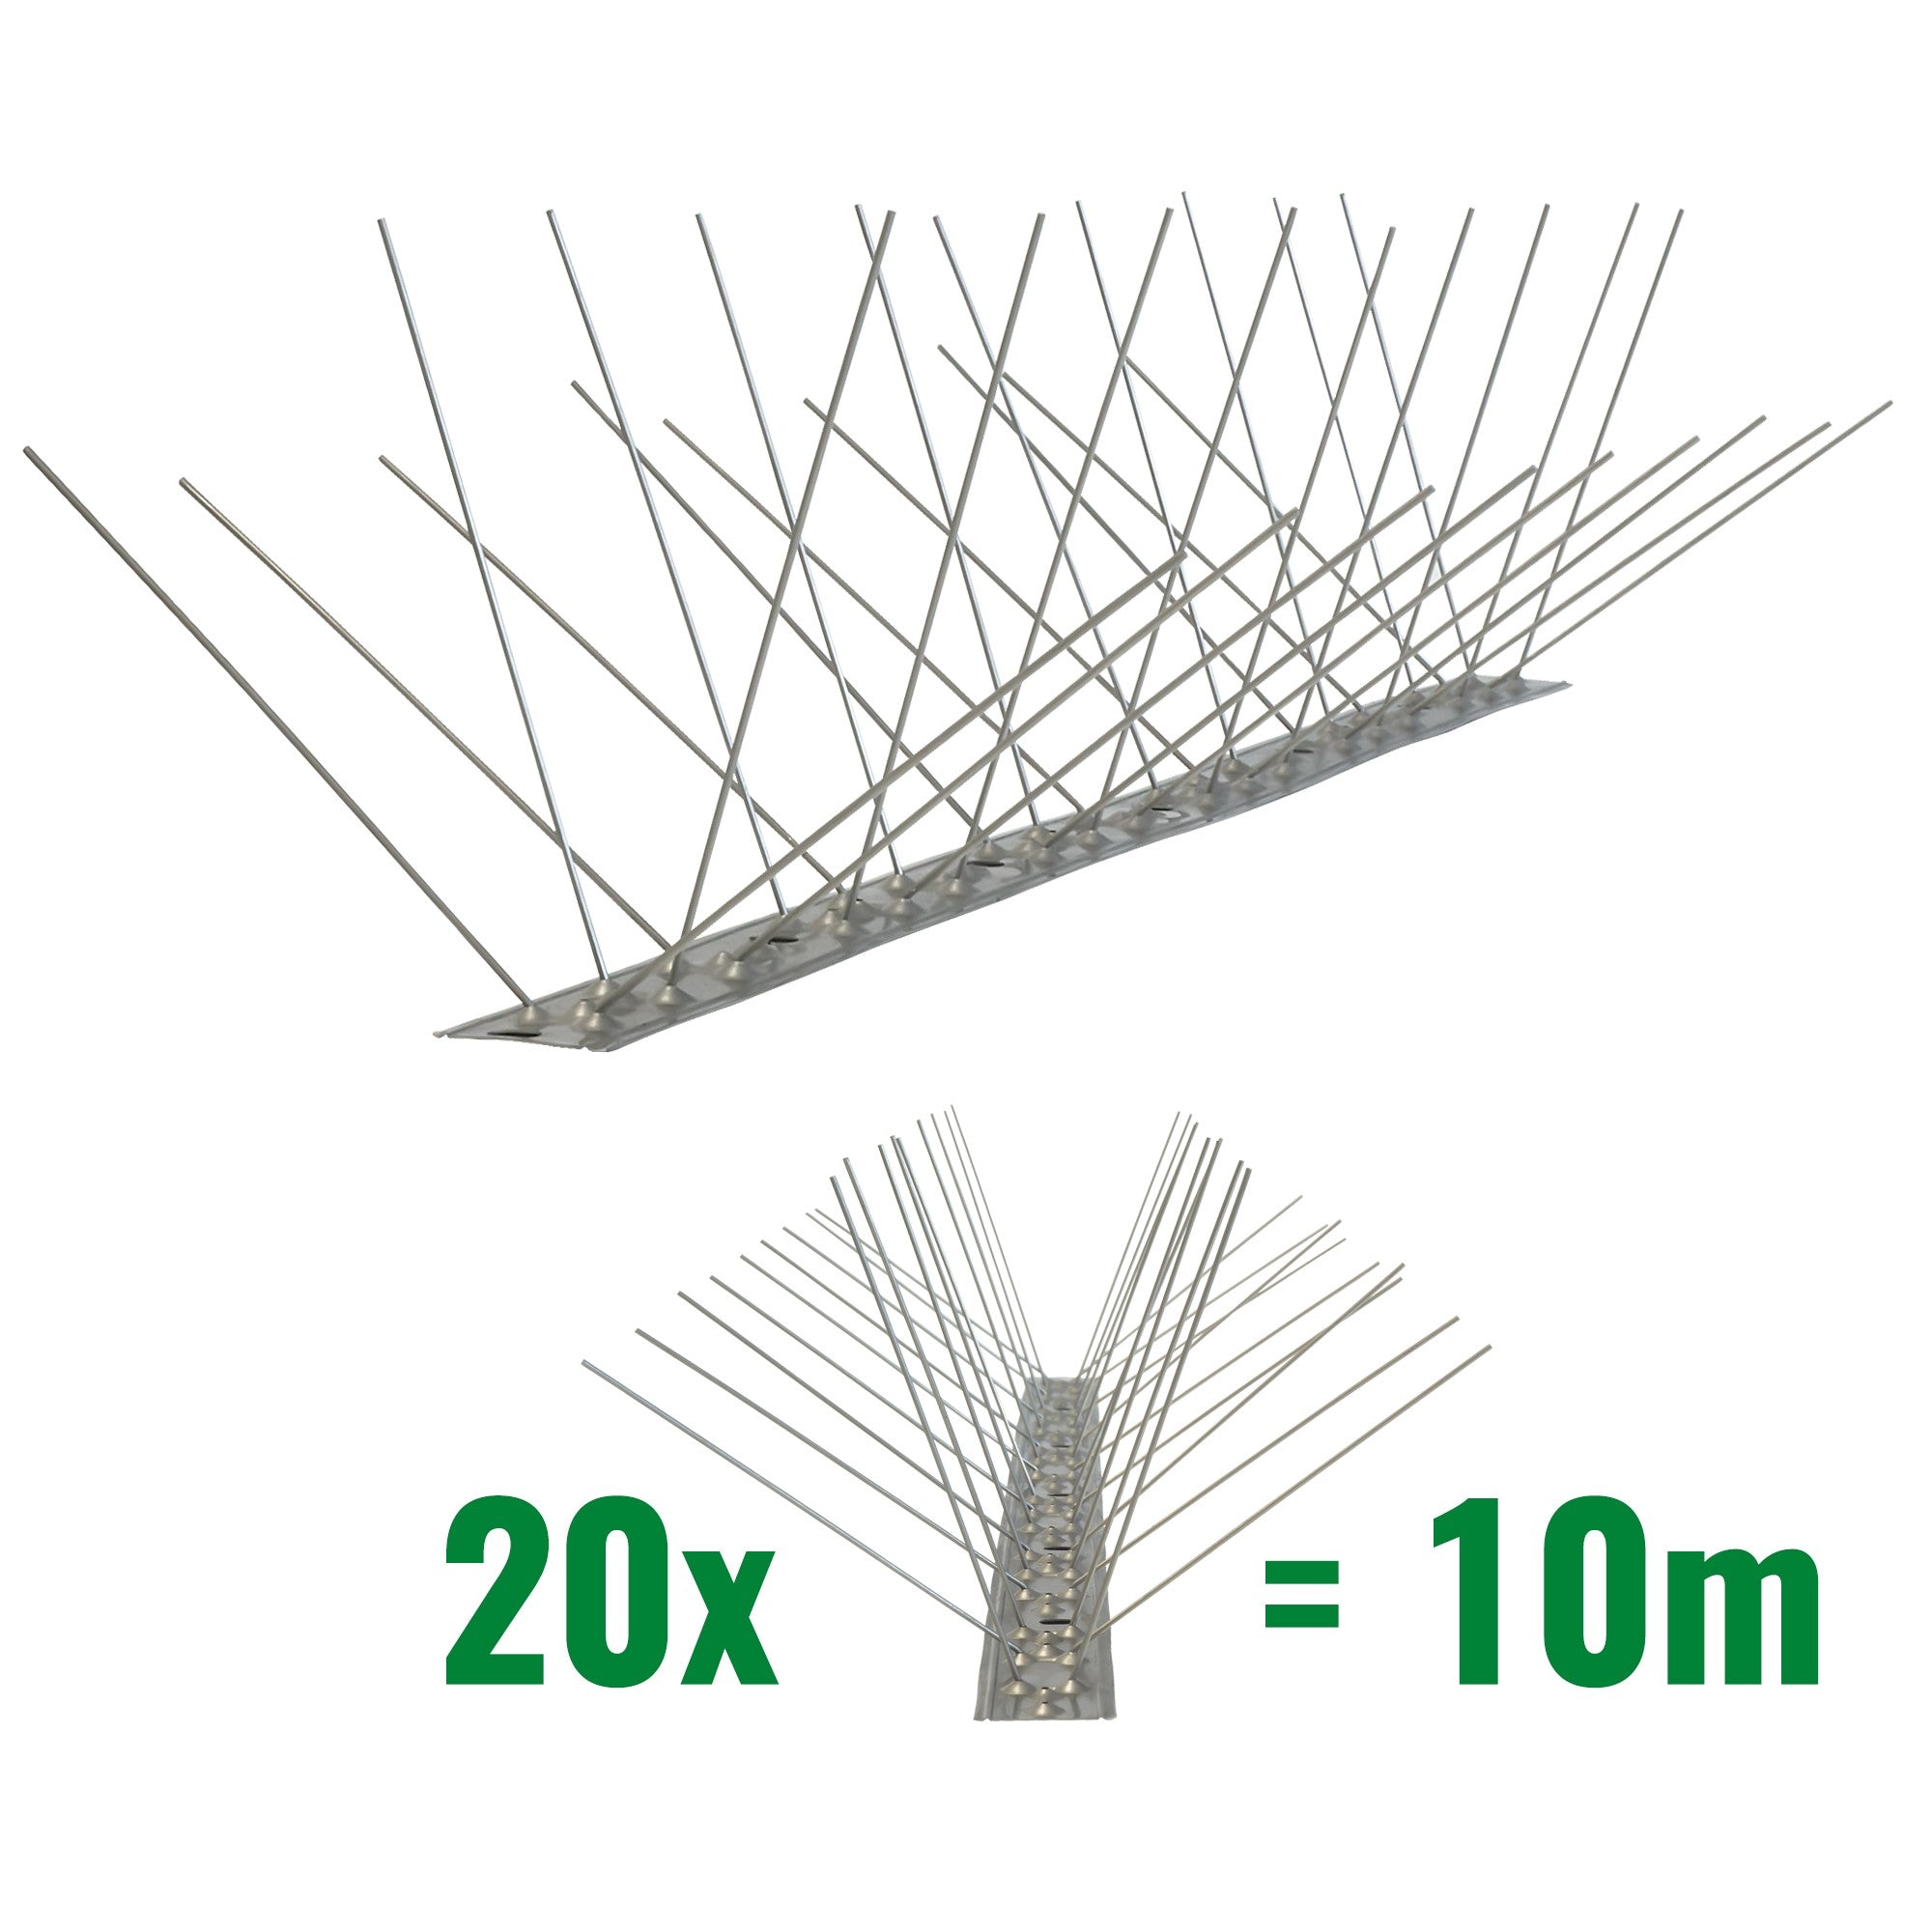 10 Meter (20 x 0,5m) Taubenspikes 4-reihig auf V2A-Flexleiste - hochwertige Lösung für Vogelabwehr Taubenabwehr Edelstahl Spikes